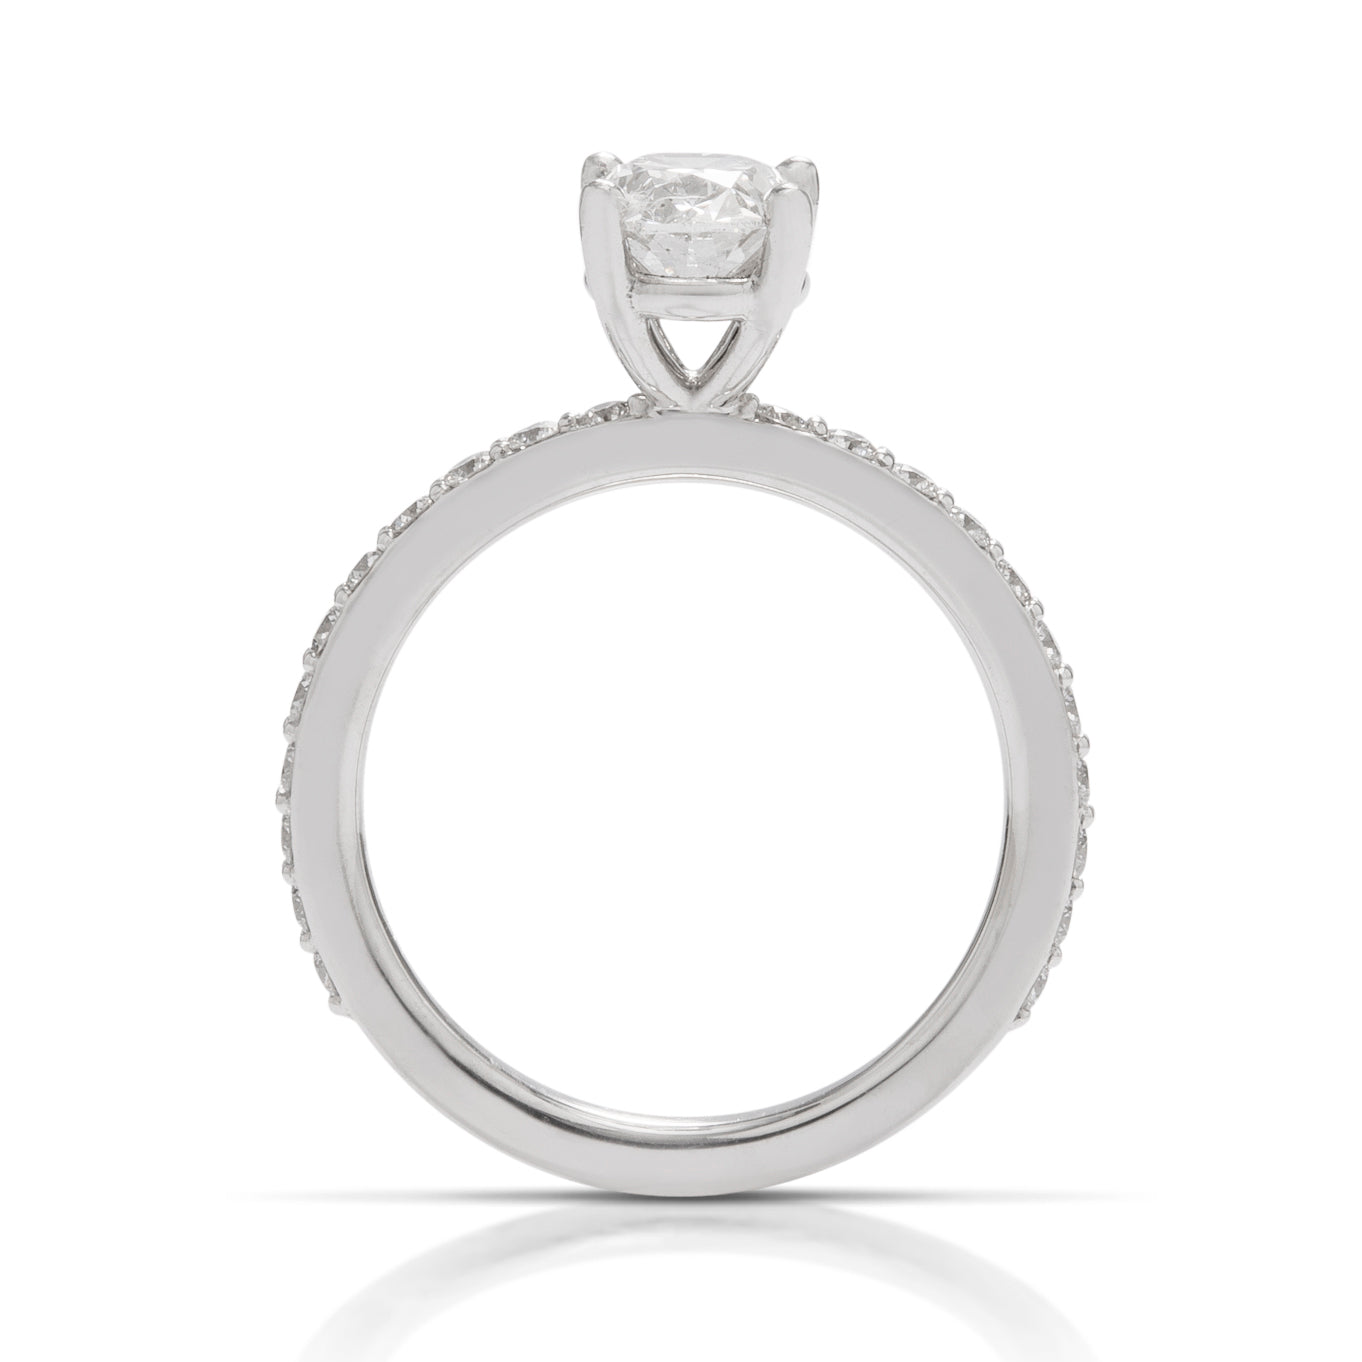 Platinum Oval Diamond Ring - Charles Koll Jewellers